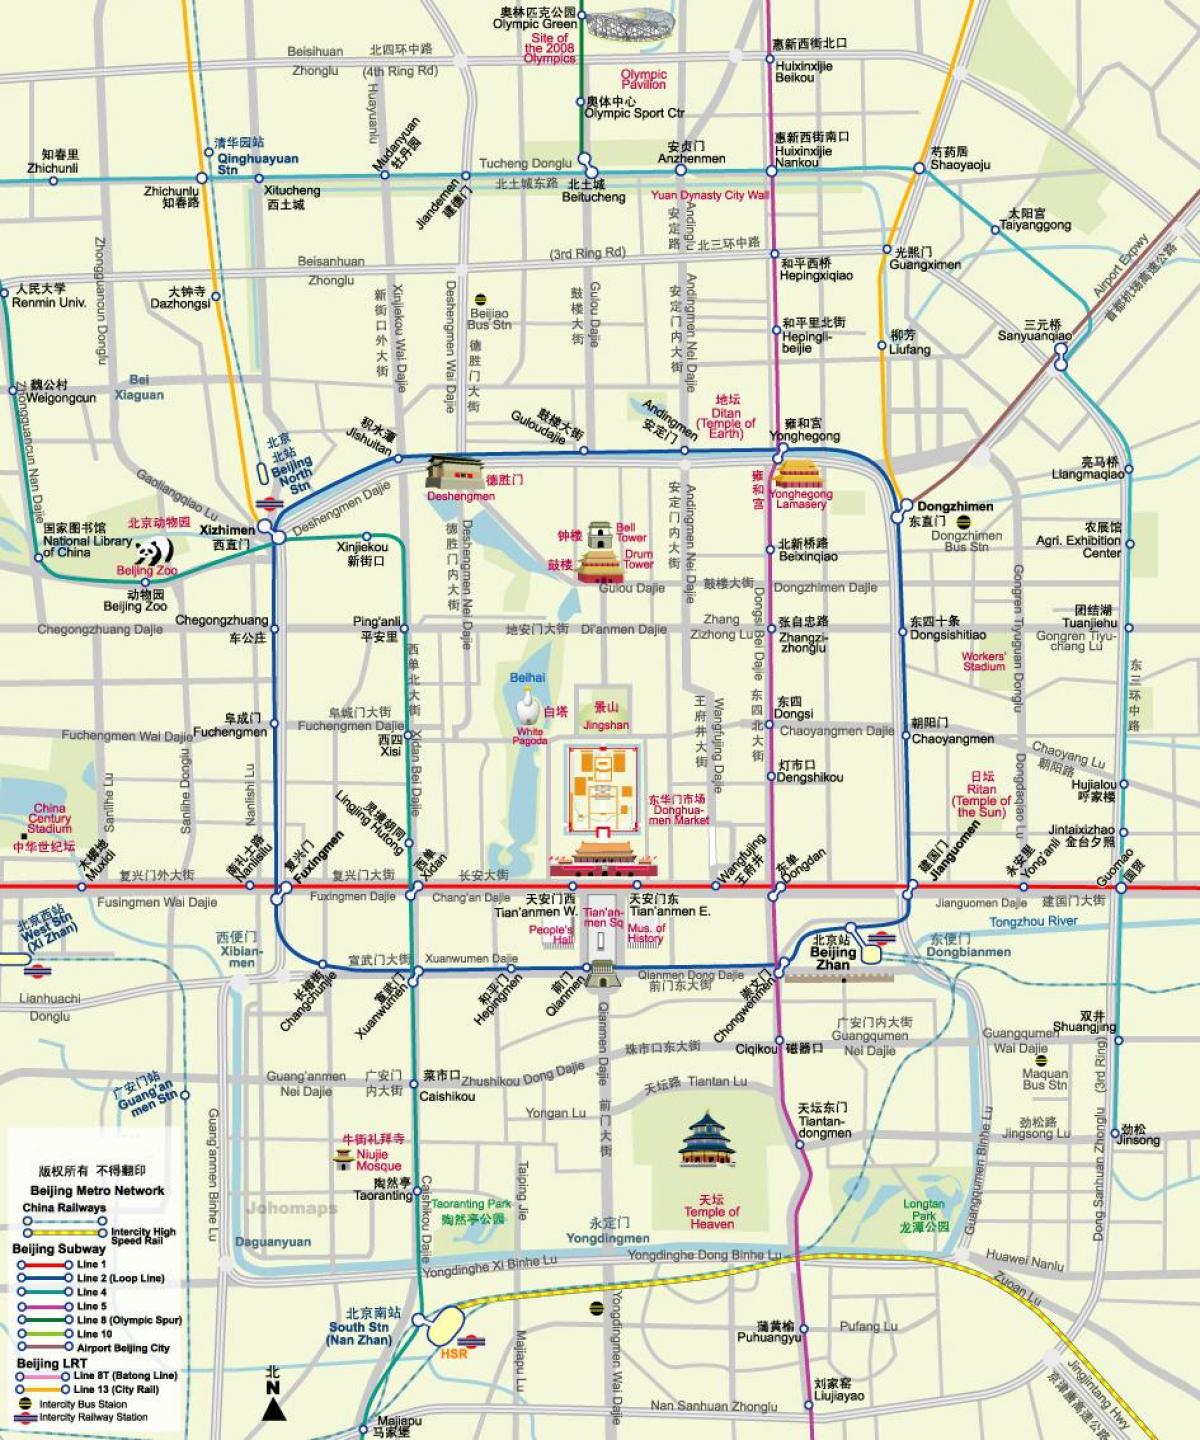 지도 베이징의 지하철 노선도와 함께 관광 명소